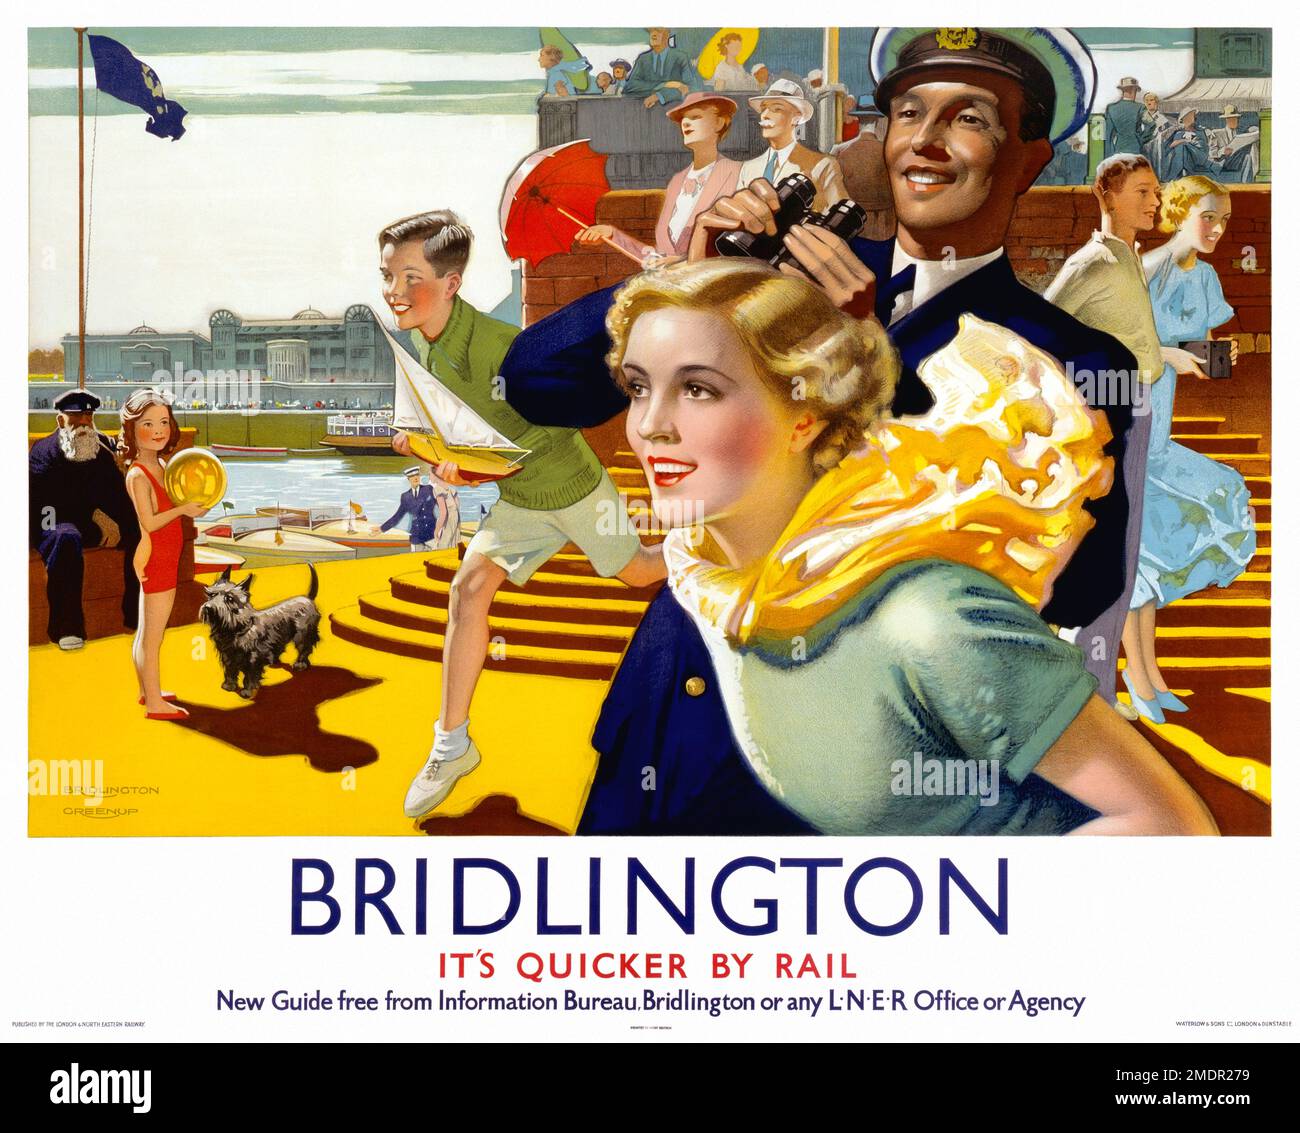 Bridlington. Es ist Quicker by Rail von Joseph Greenup (1891-1946). Poster wurde 1936 in Großbritannien veröffentlicht. Stockfoto